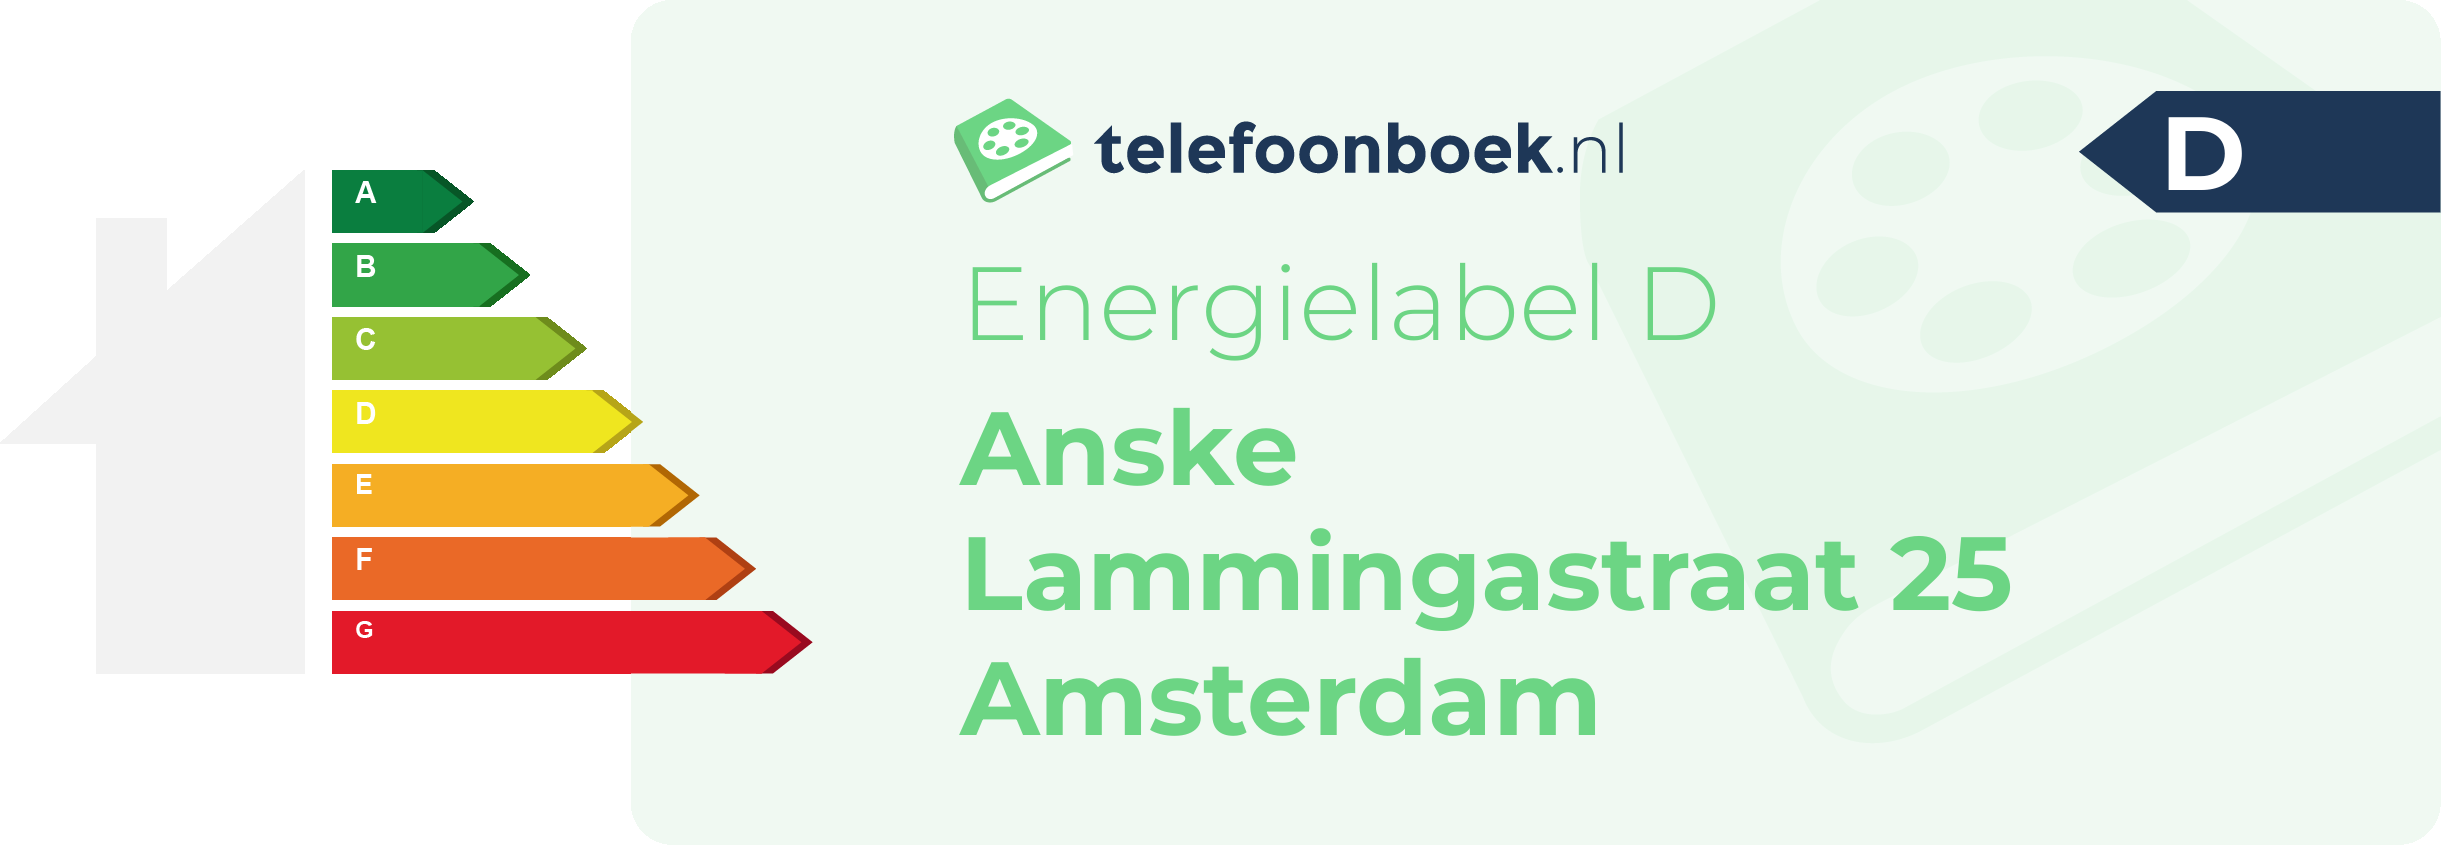 Energielabel Anske Lammingastraat 25 Amsterdam